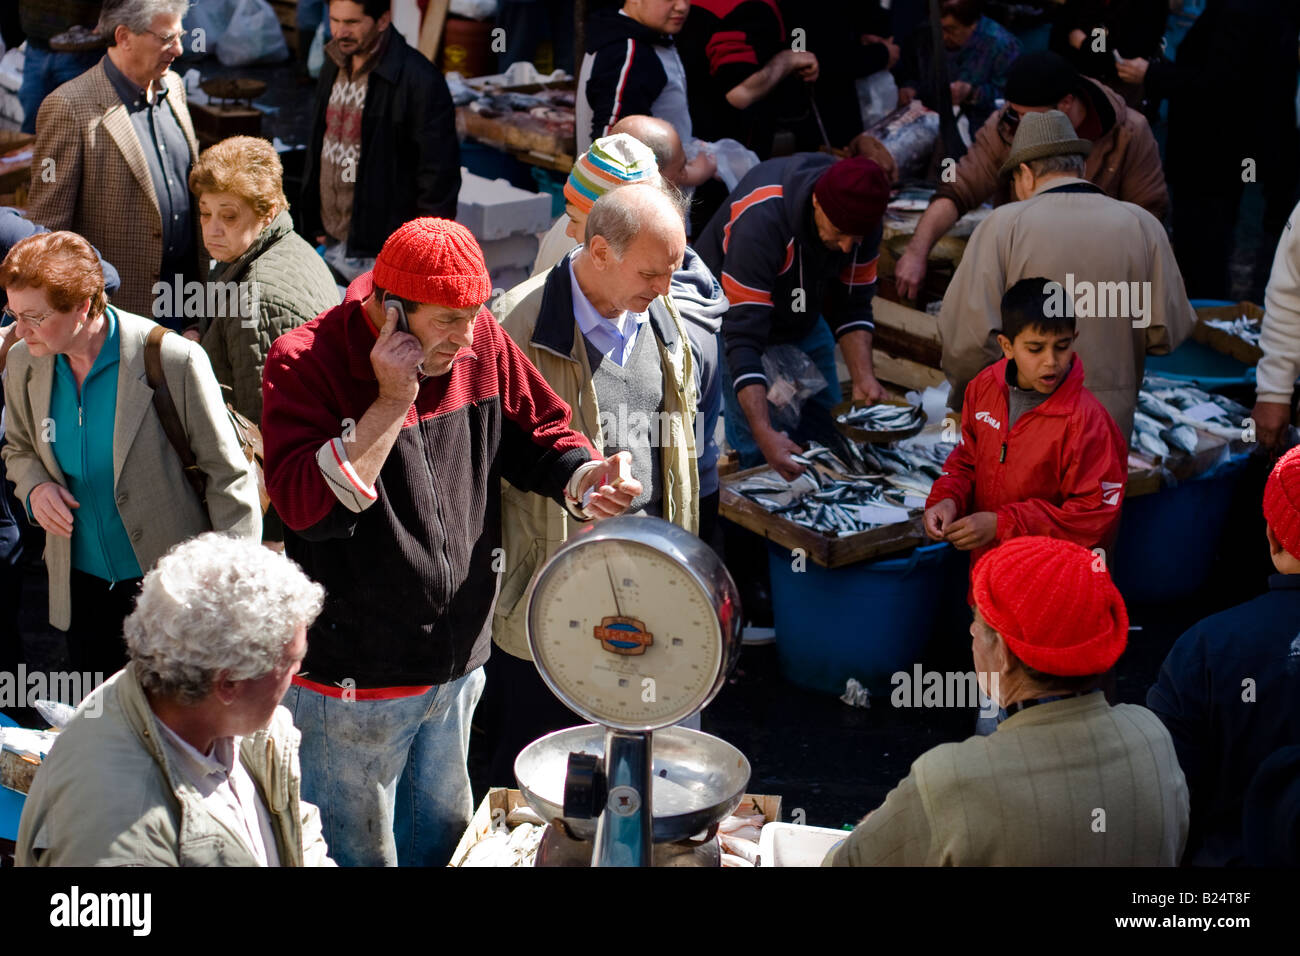 Vendeur de poisson talk sur téléphone mobile à la Pescheria di Sant Agata marché aux poissons de Catane, Sicile, Italie Banque D'Images